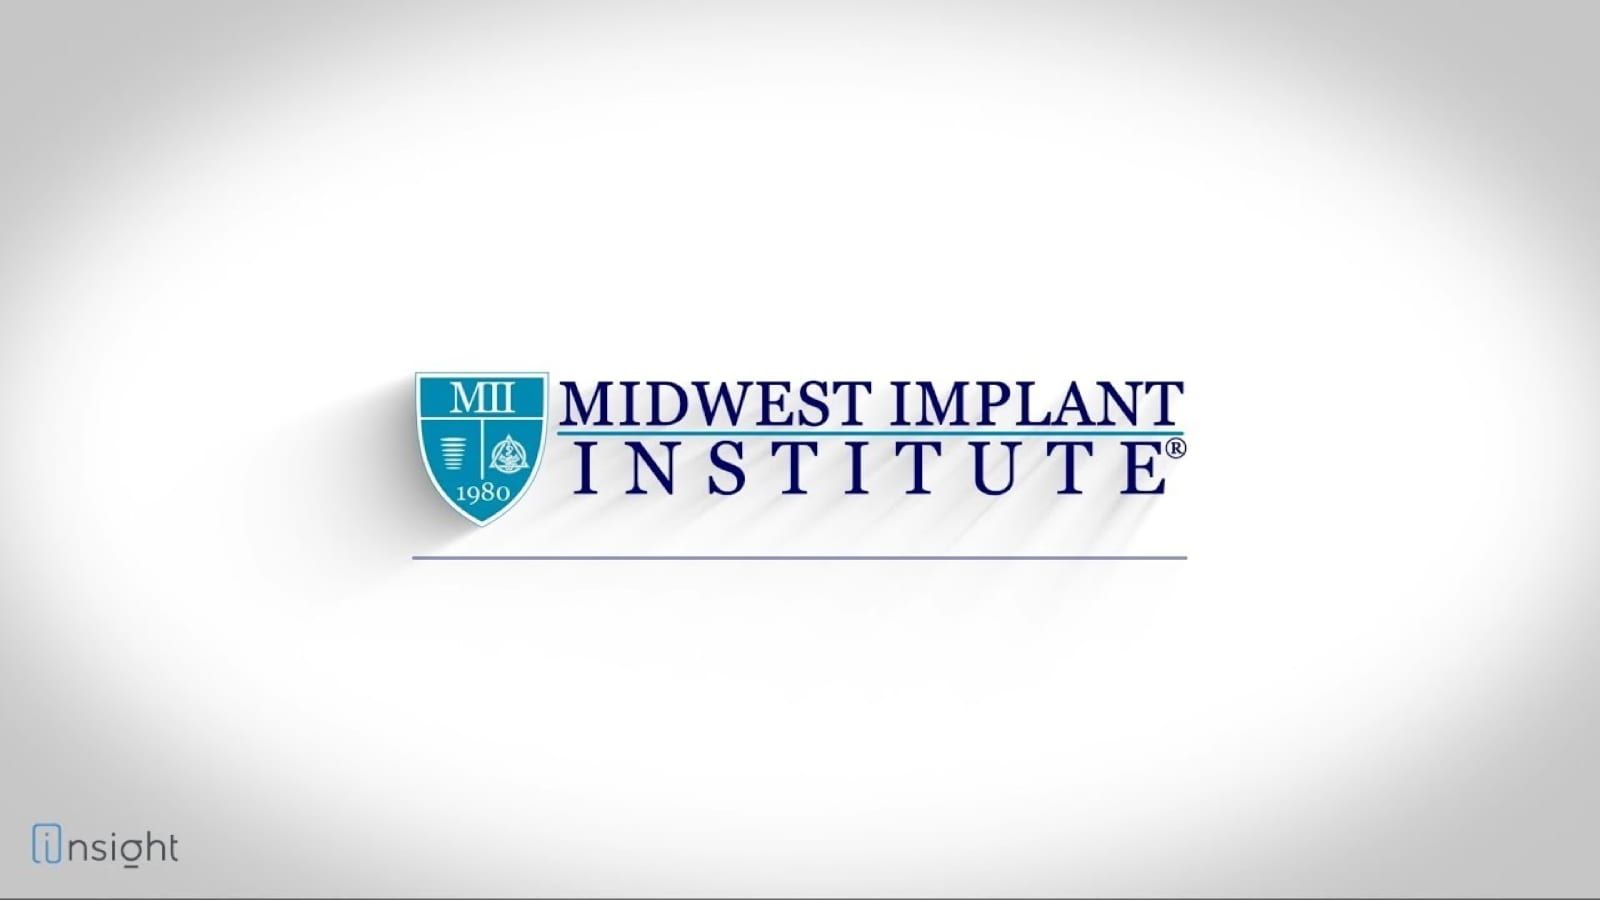 Midwest implant institute